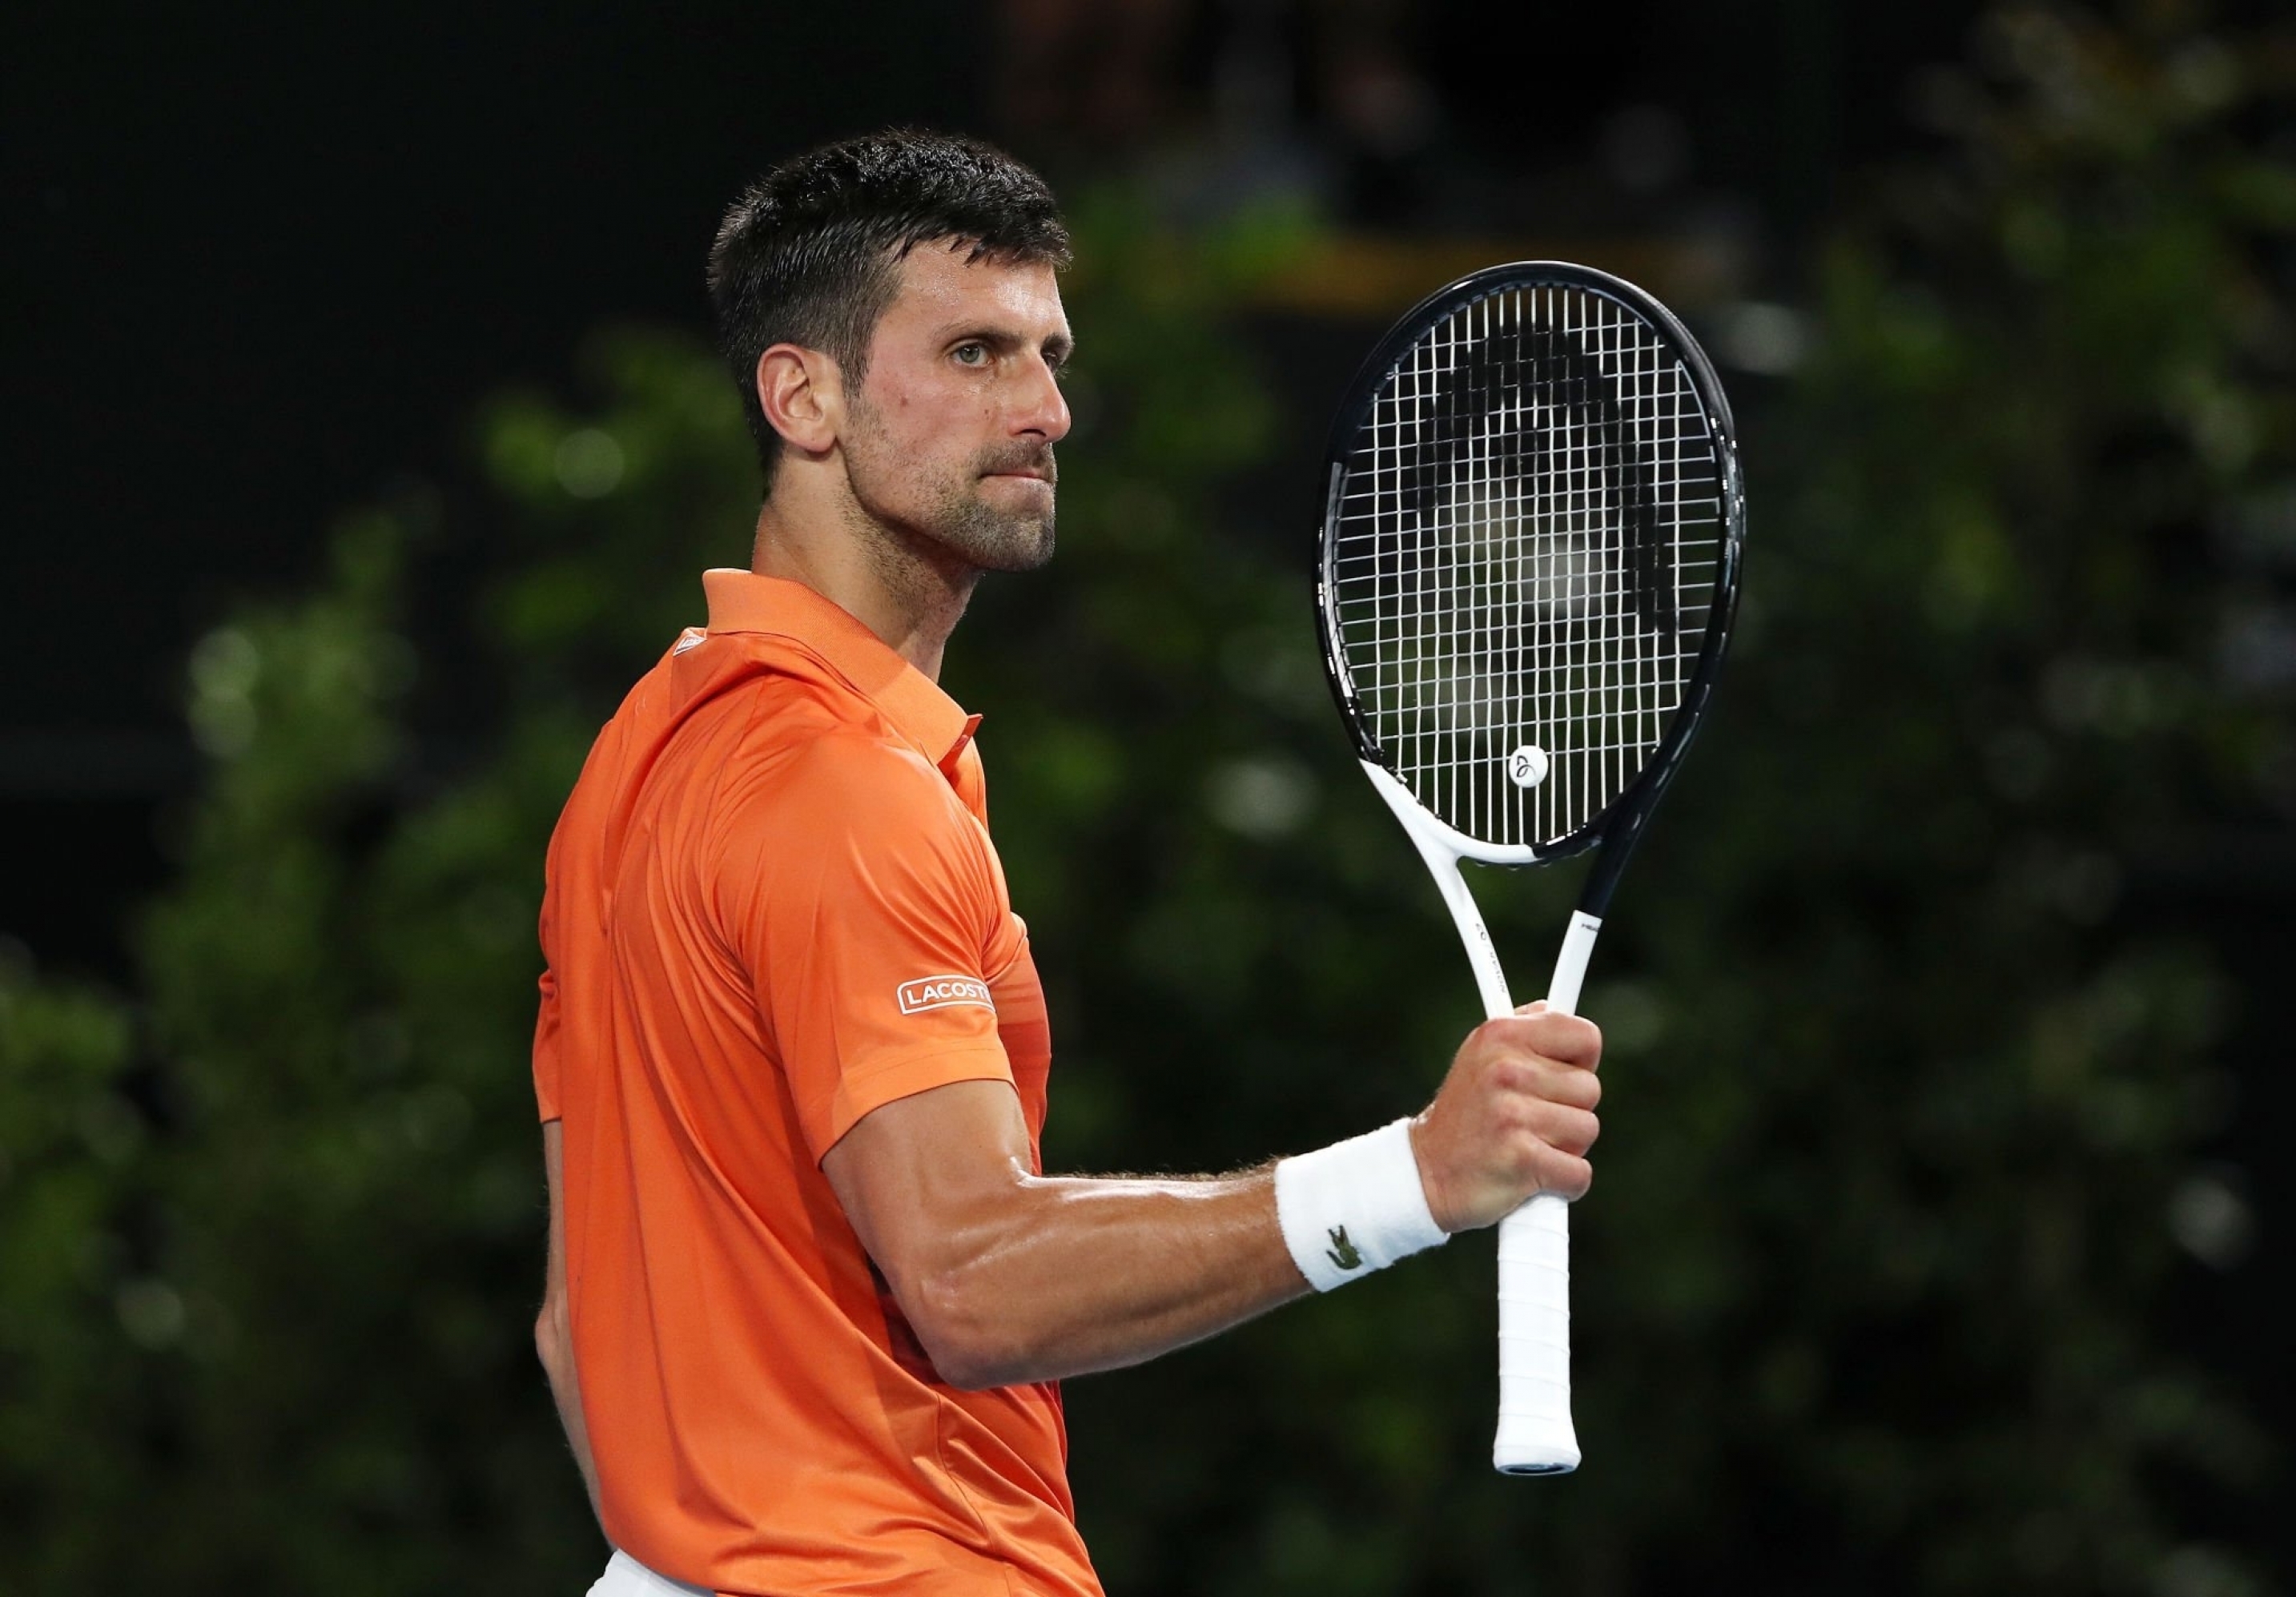 Sorotan Djokovic vs Medvedev: Novak Djokovic memasuki final Adelaide International, mengalahkan Daniil Medvedev dalam dua set langsung - Tonton Sorotan